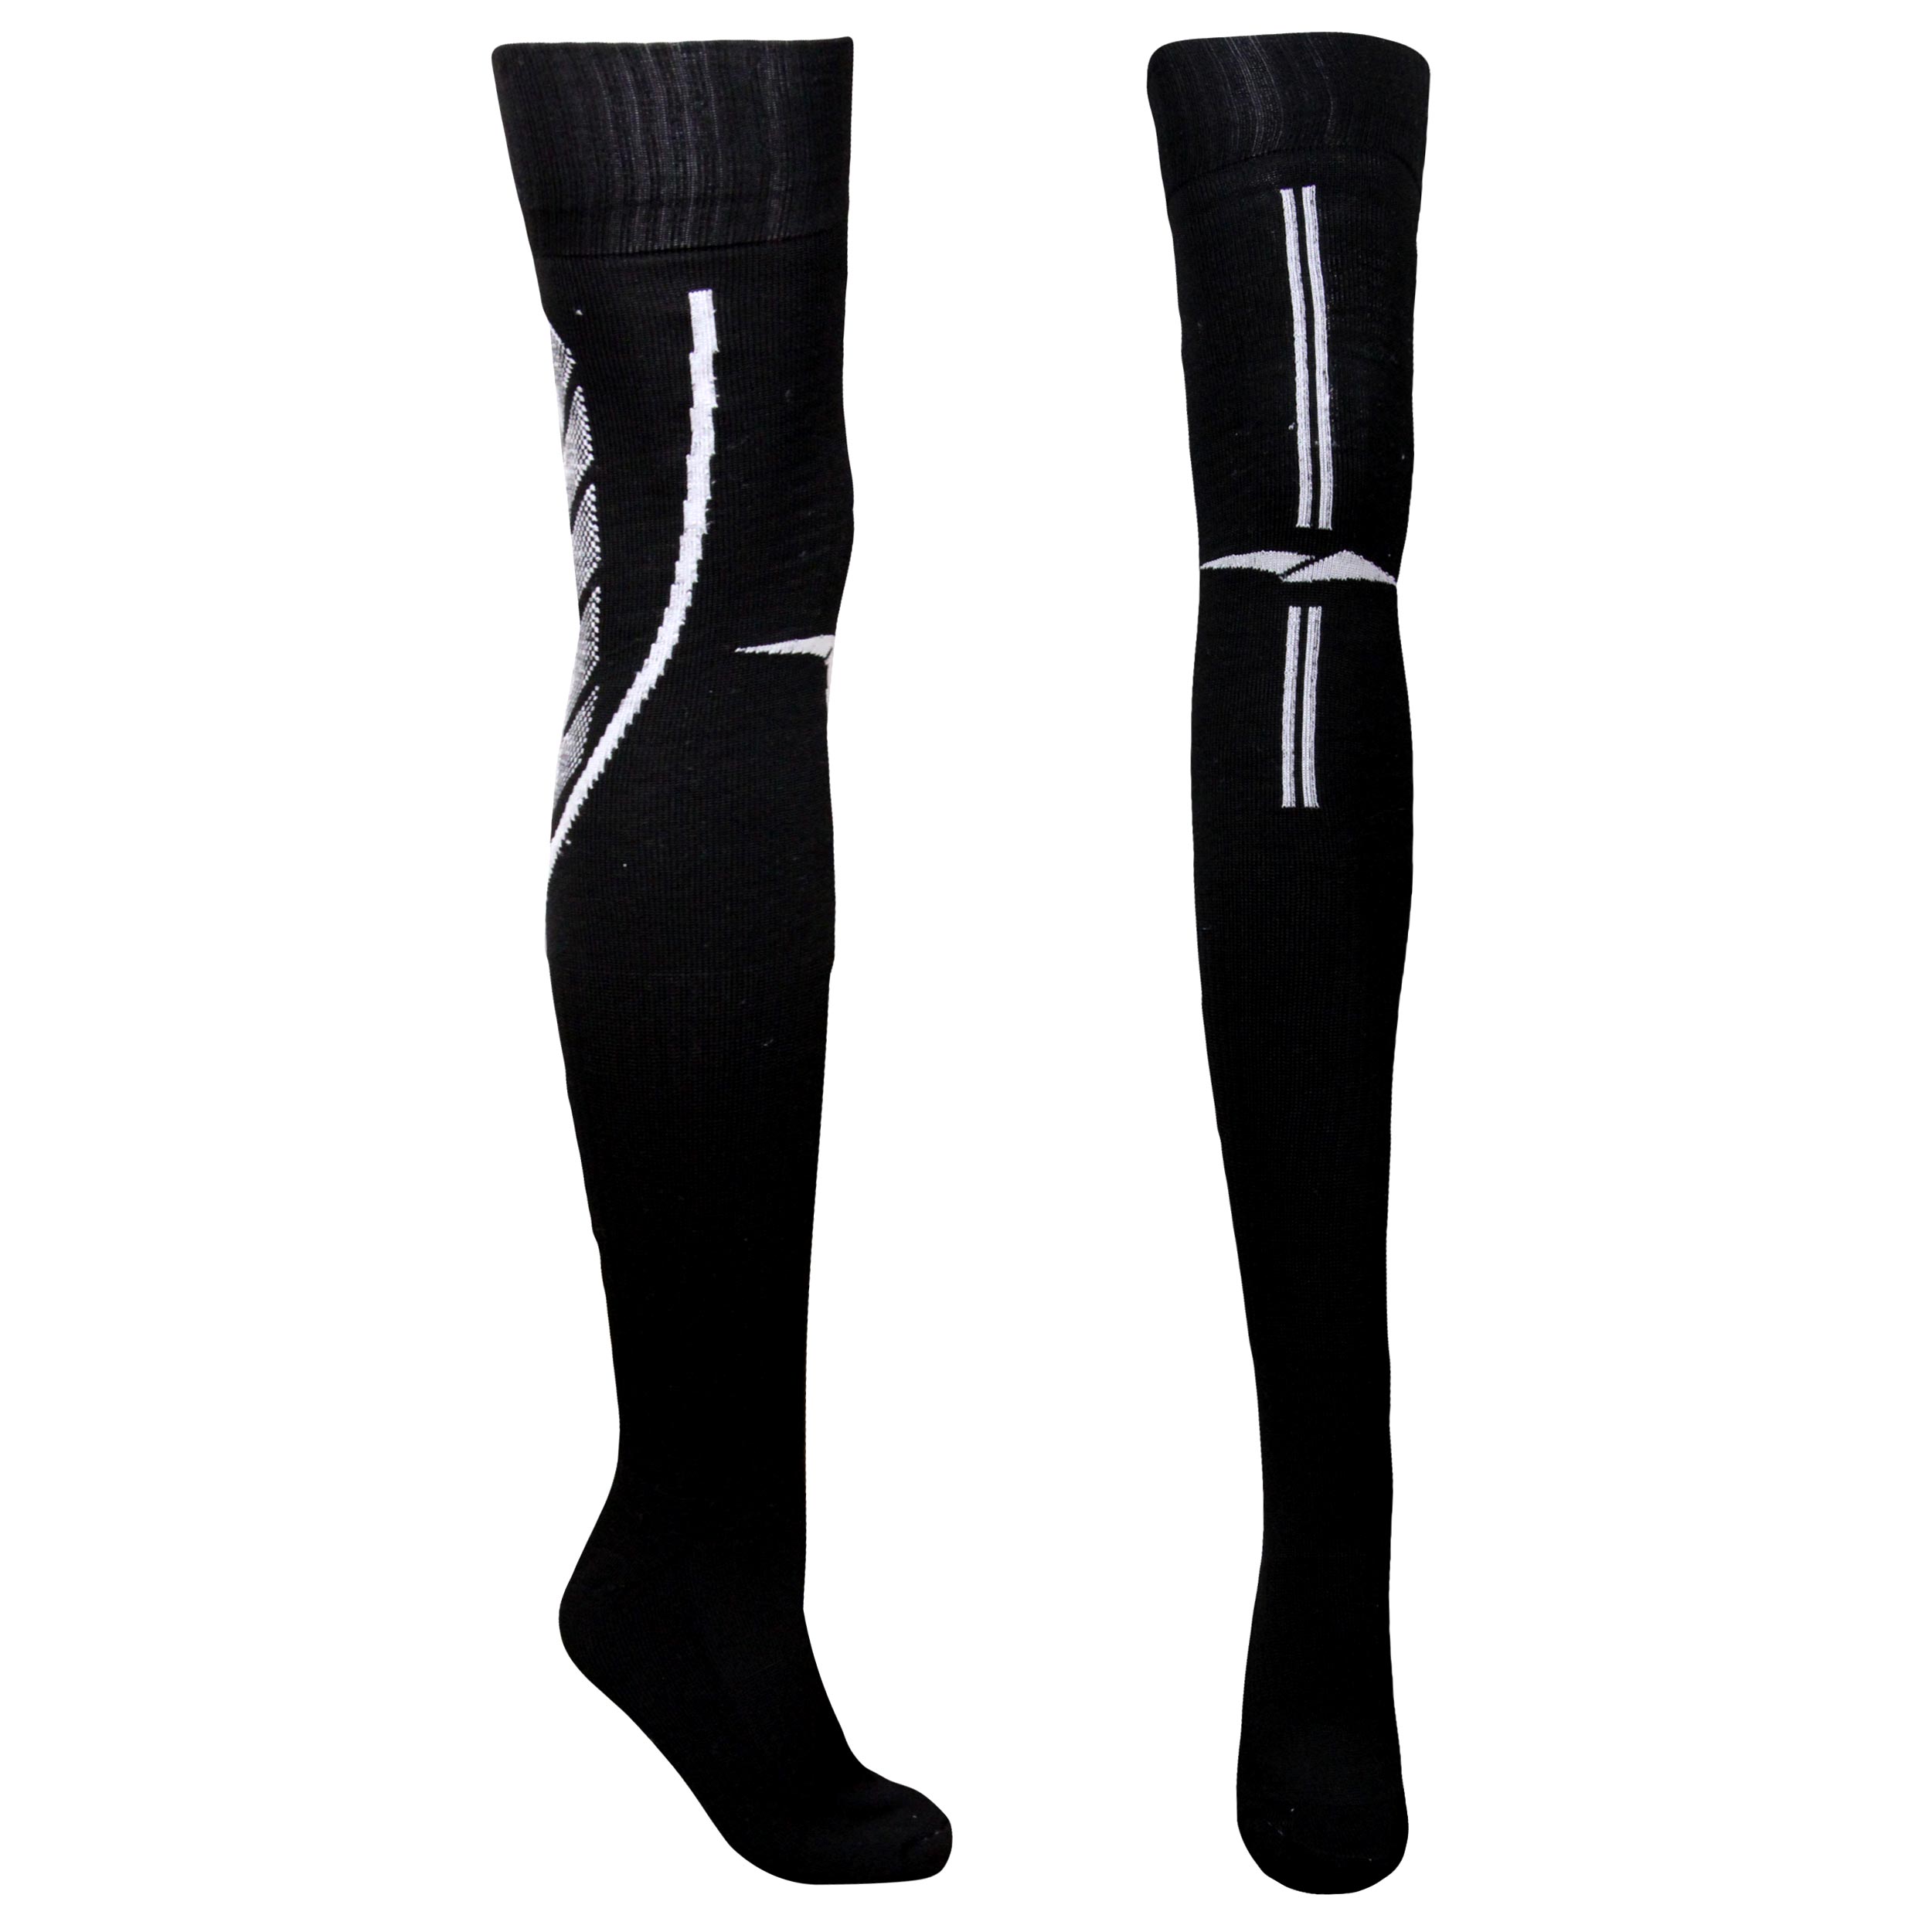                          جوراب ورزشی ساق بلند مردانه ماییلدا مدل کف حوله ای کد 4187 رنگ مشکی